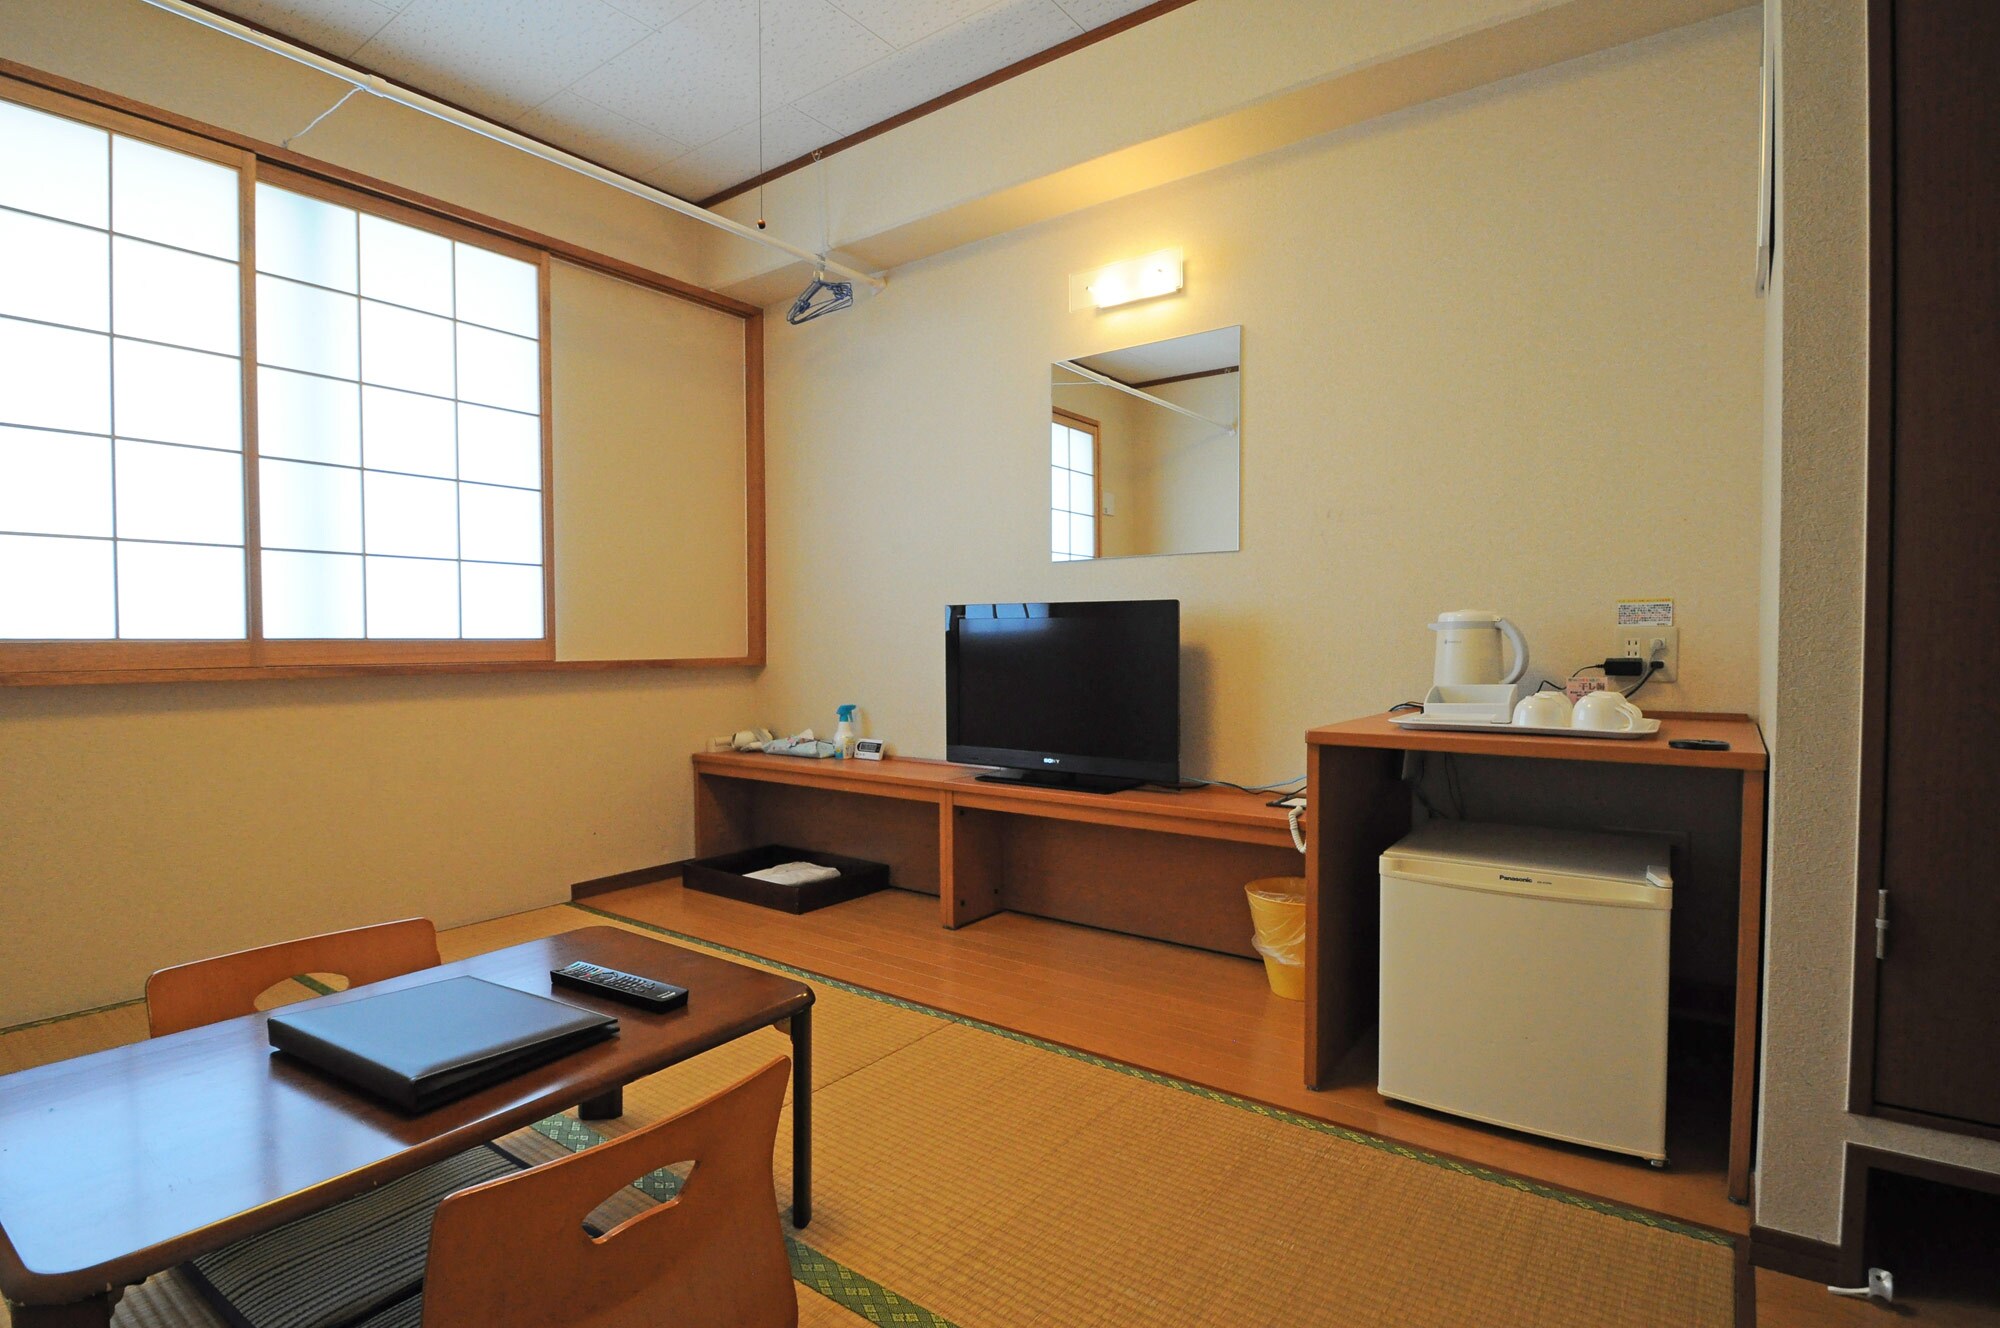 [ห้องสไตล์ญี่ปุ่น] พักผ่อนบนเสื่อทาทามิและแนะนำสำหรับครอบครัว